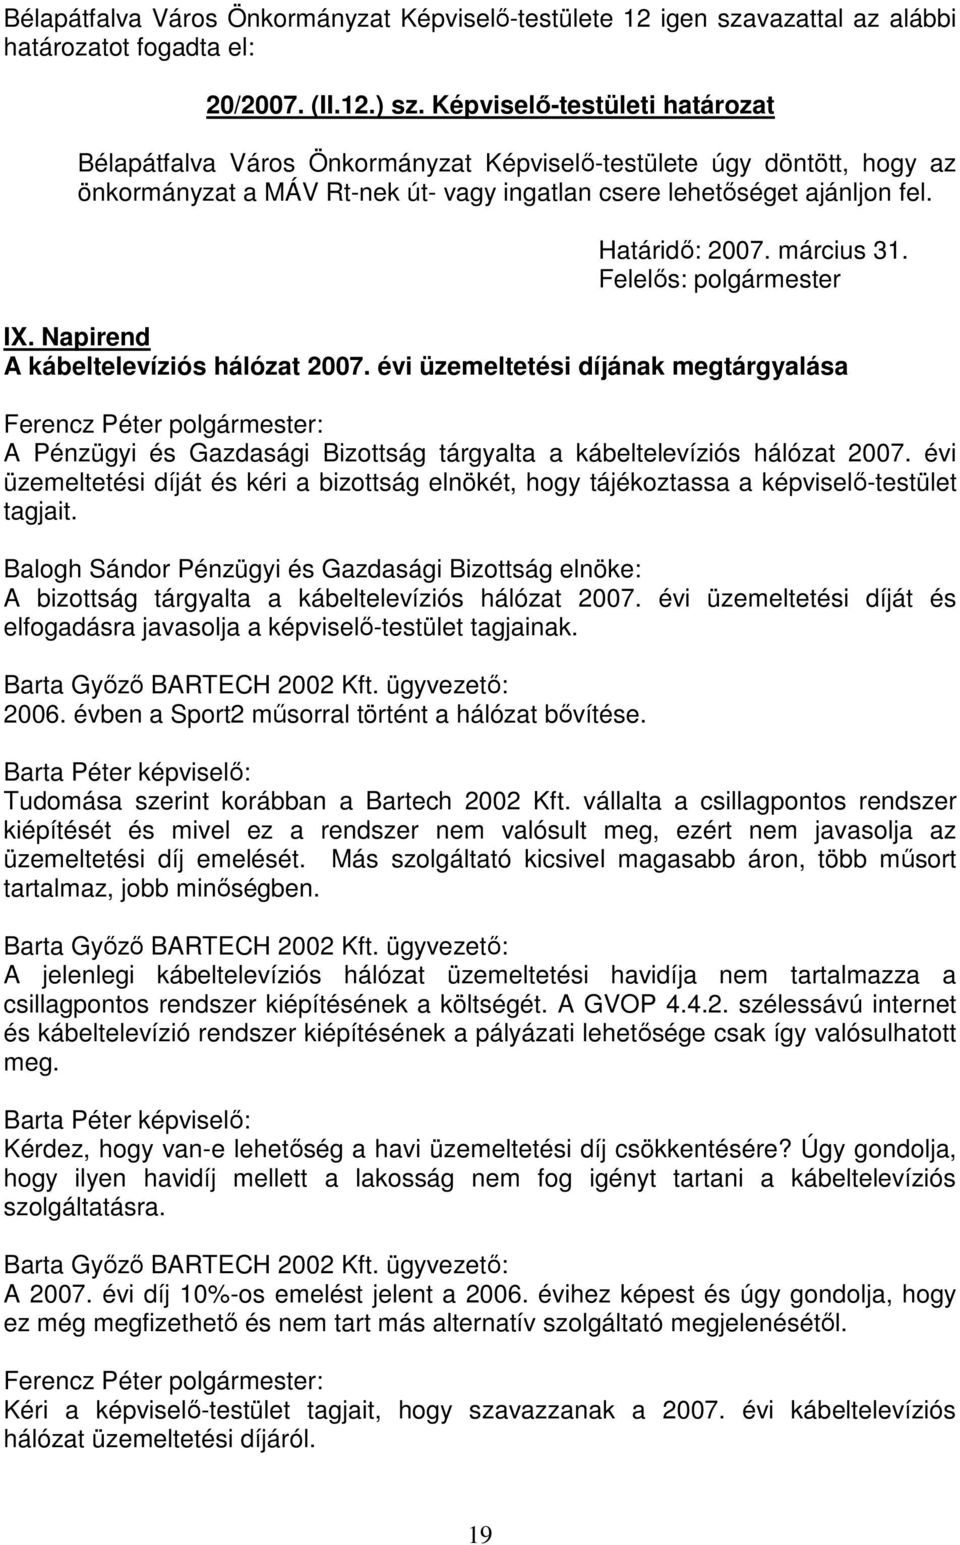 március 31. Felelős: polgármester IX. Napirend A kábeltelevíziós hálózat 2007. évi üzemeltetési díjának megtárgyalása A Pénzügyi és Gazdasági Bizottság tárgyalta a kábeltelevíziós hálózat 2007.